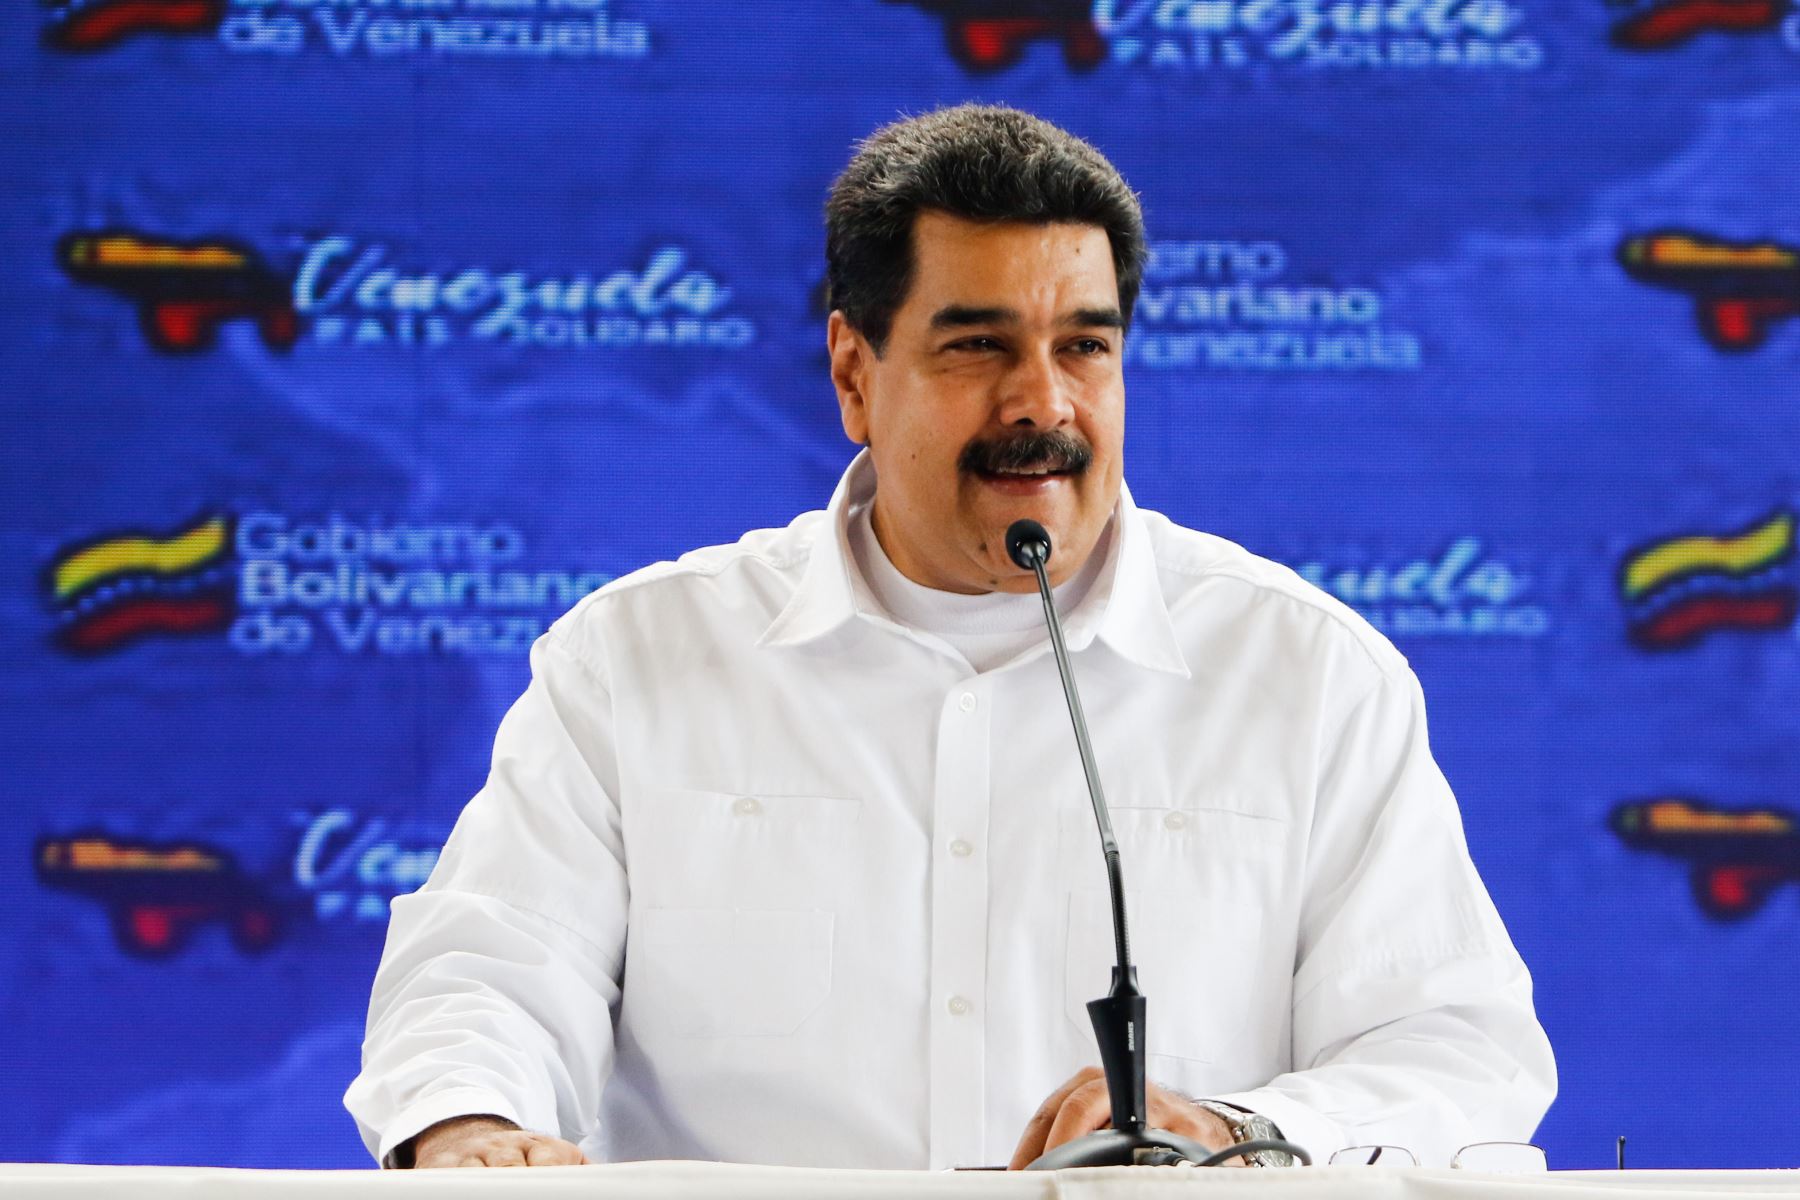 Maduro deploró la sanción del Departamento del Tesoro de Estados Unidos contra su "círculo cercano", incluida su esposa. Foto: EFE.